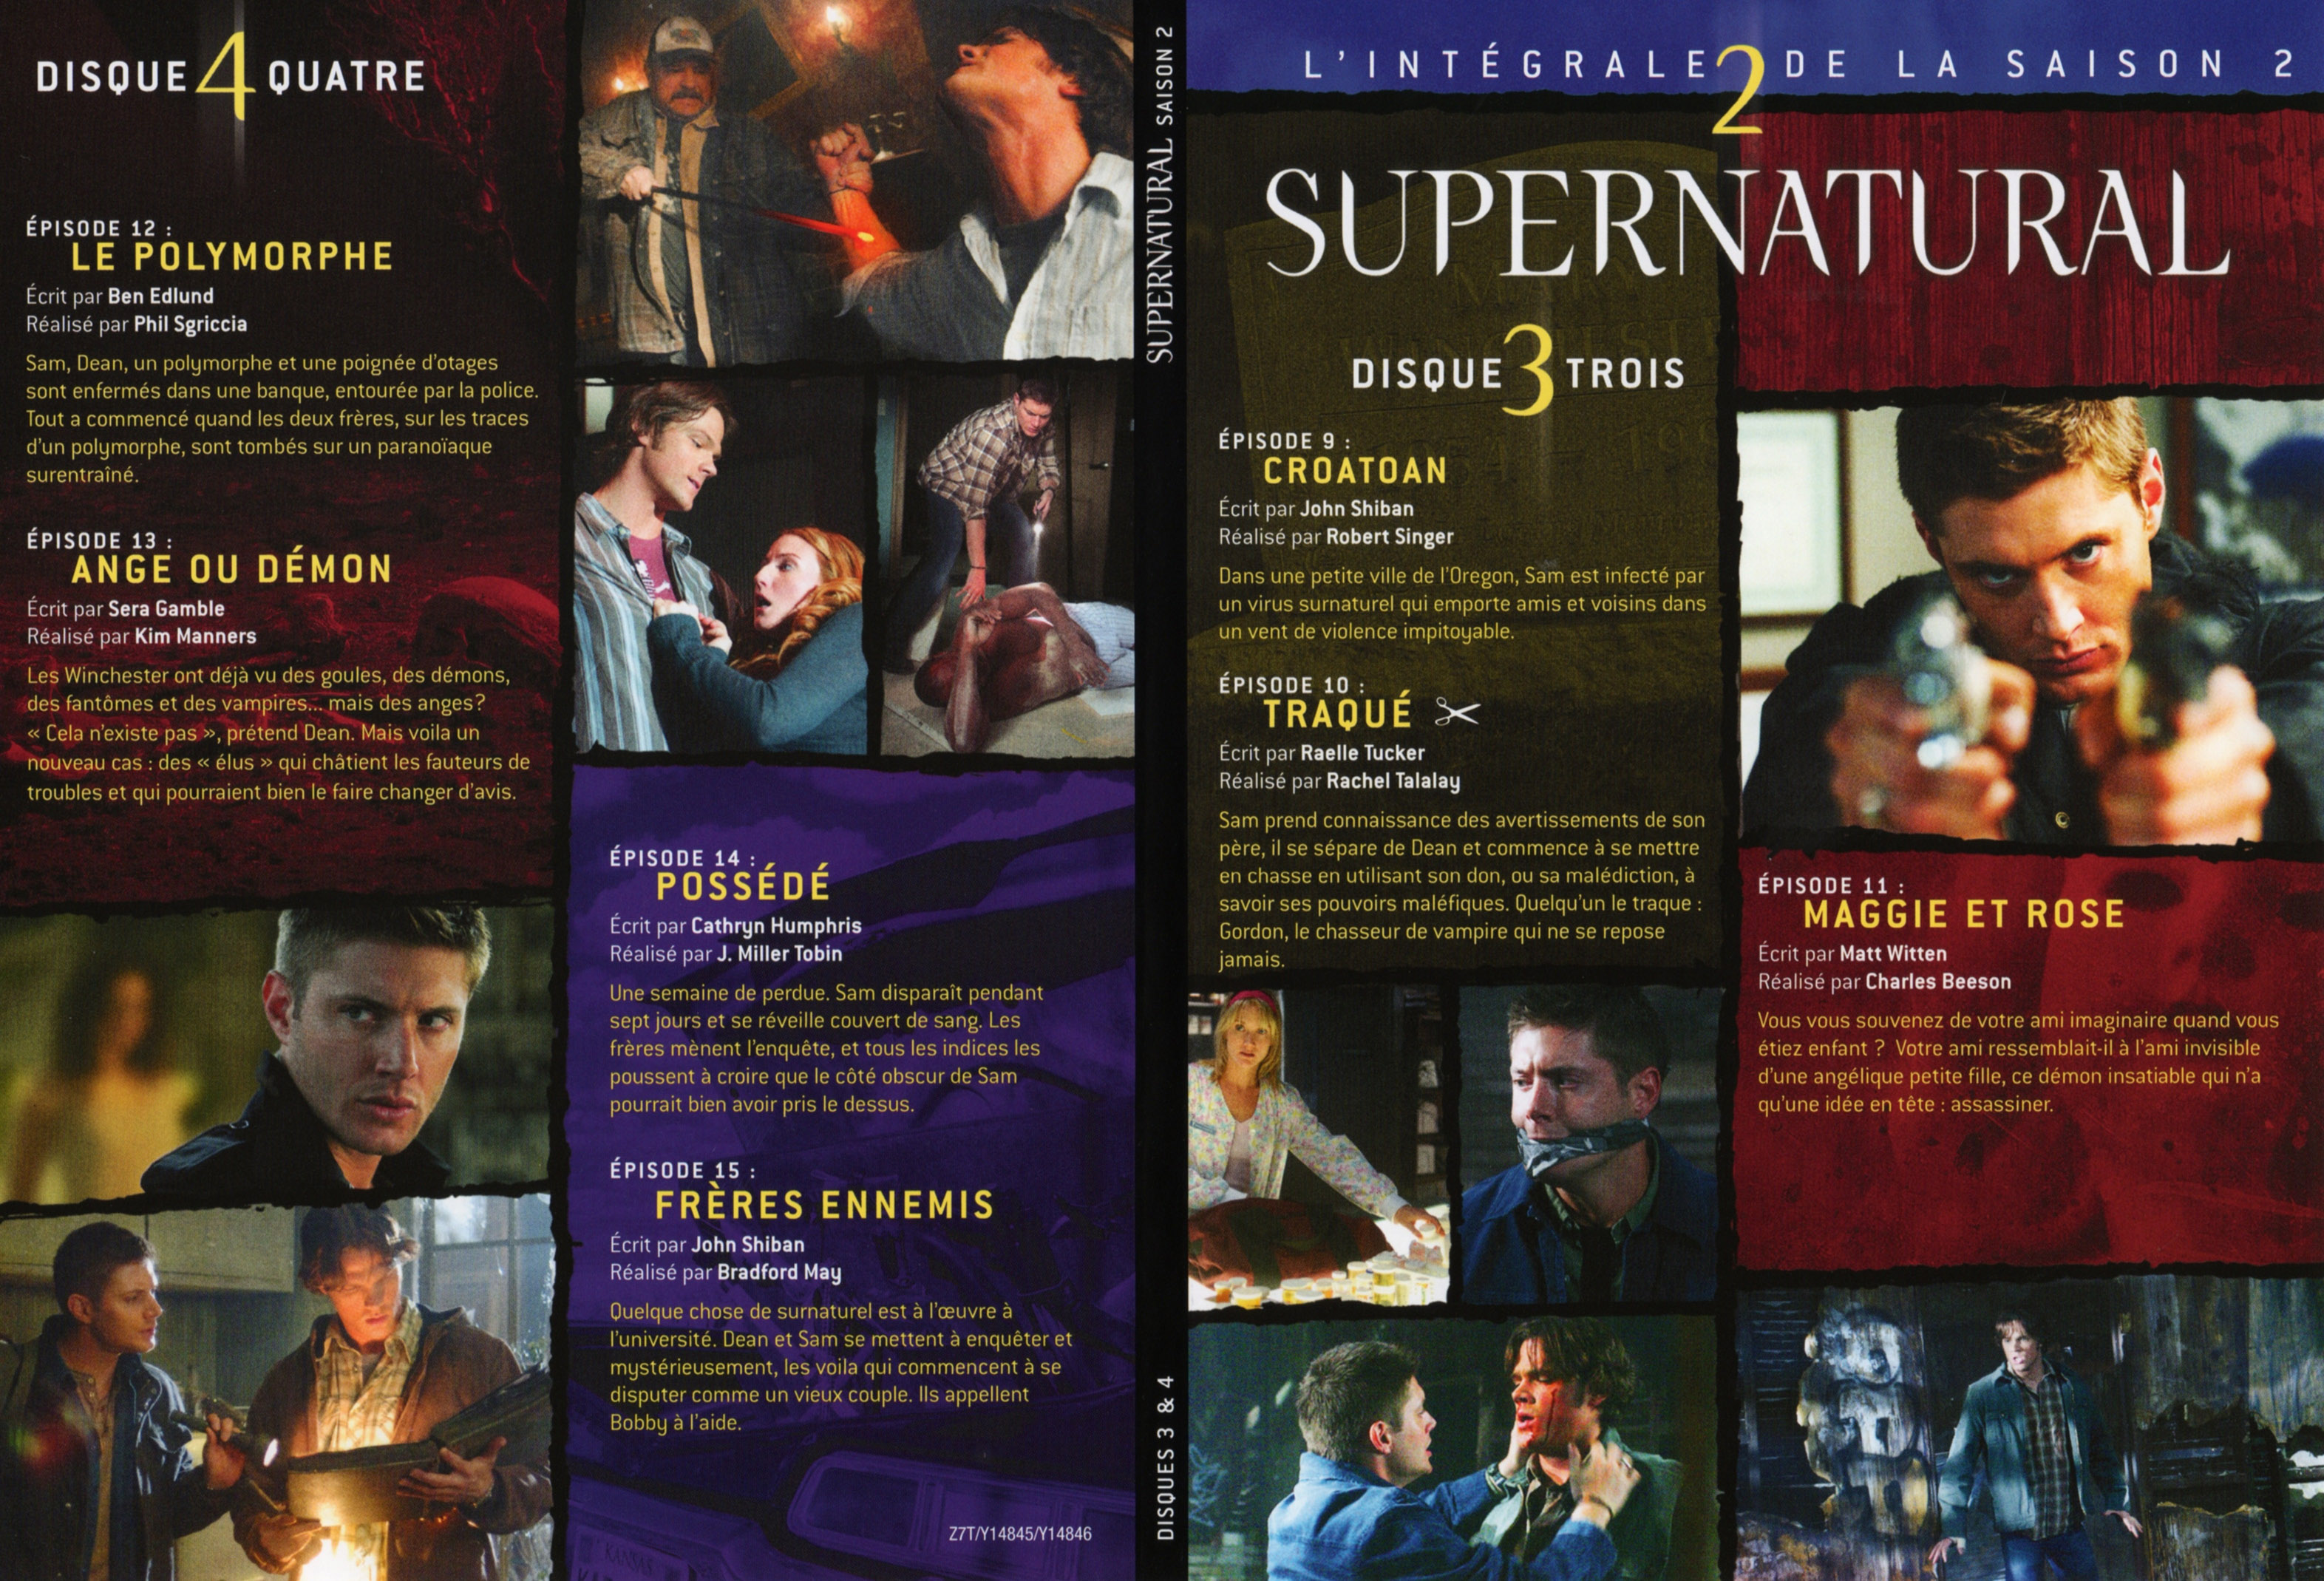 Jaquette DVD Supernatural Saison 2 DVD 2